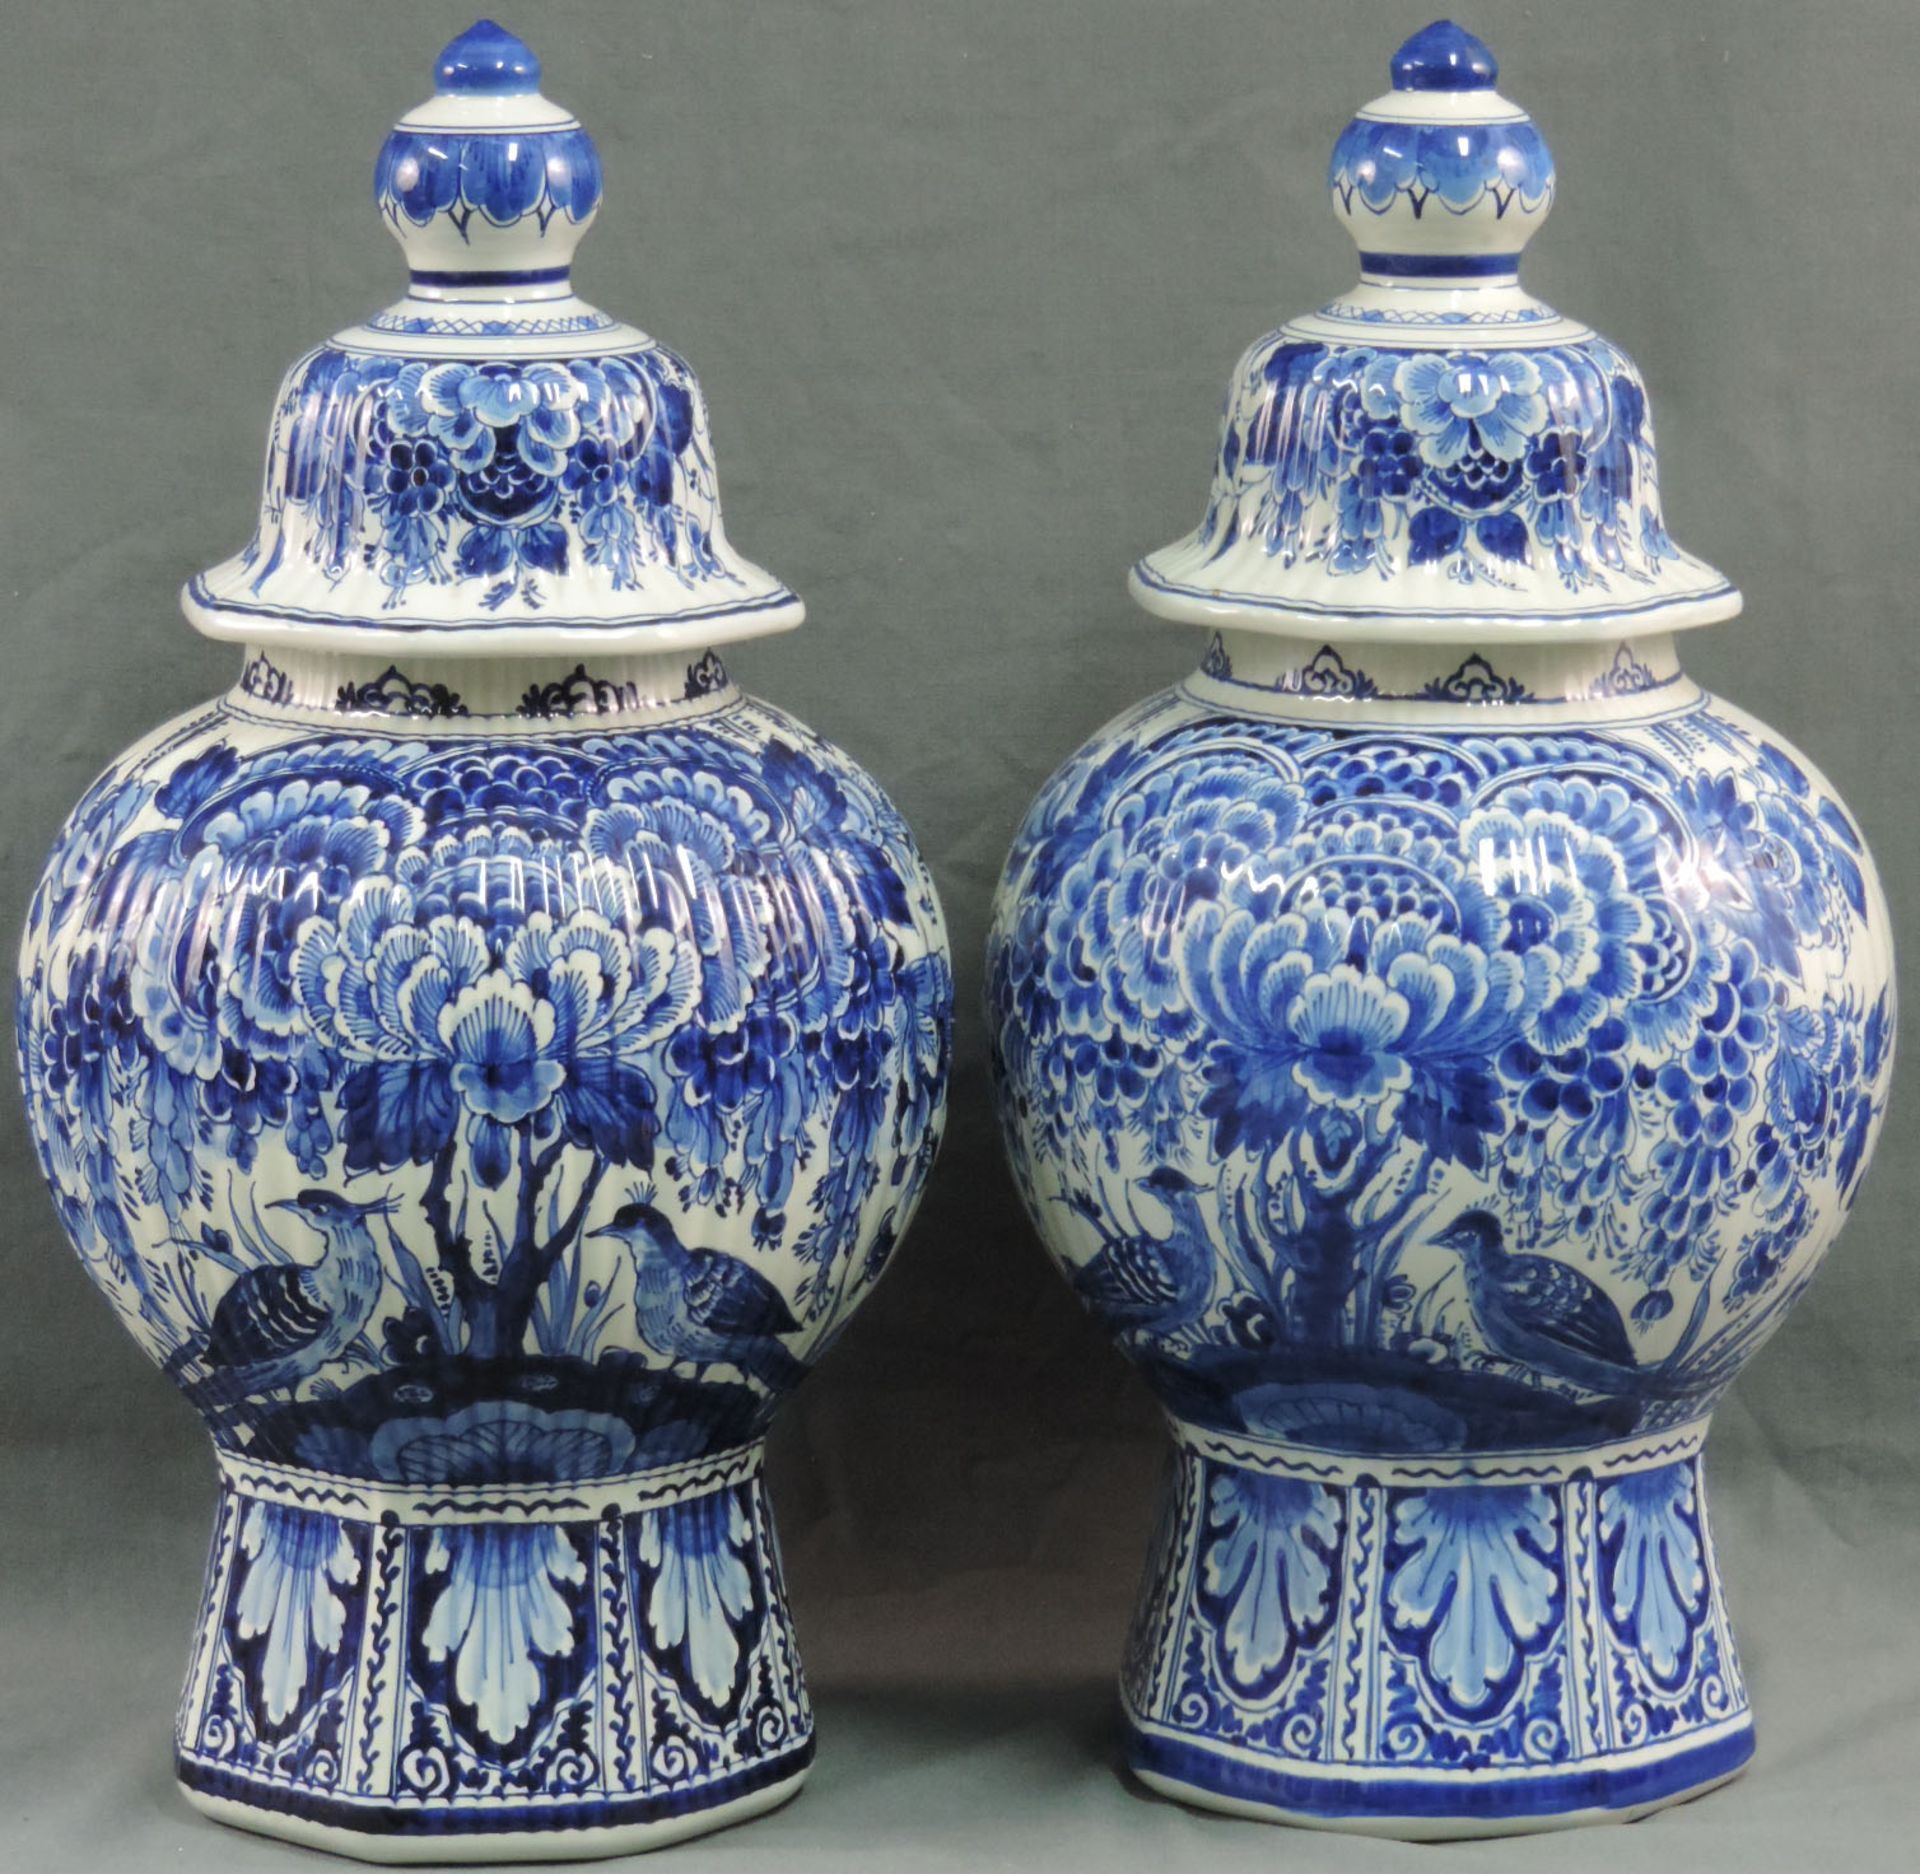 2 Vasen mit Deckel, Delft.Mit Deckel 49 cm hoch. Unter der Glasur blaue Marken und Signaturen.2